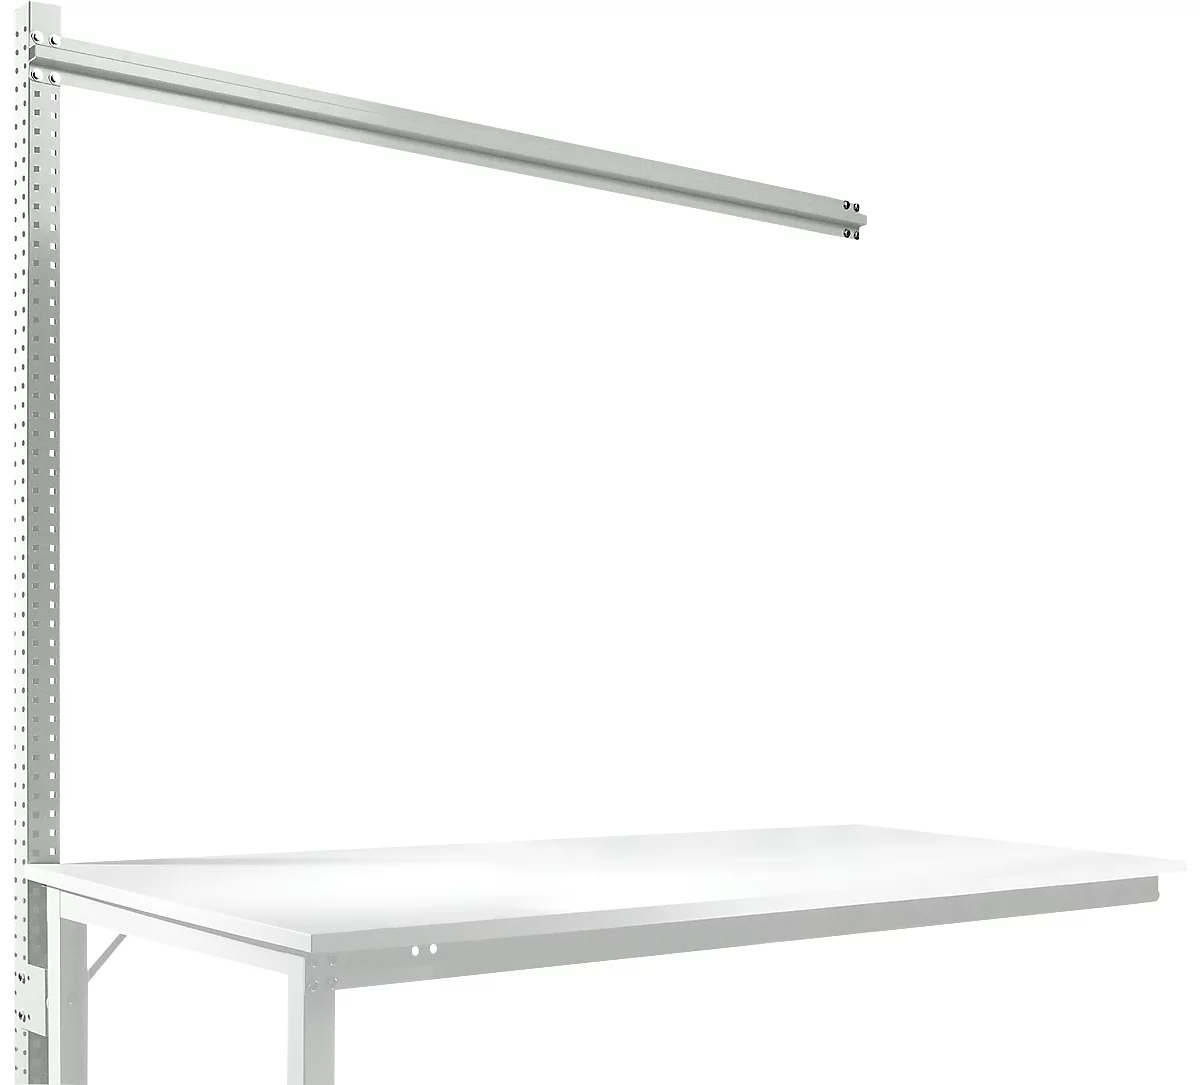 Estructura pórtica adicional para mesa de extensión STANDARD sistema mesa de trabajo/banco de trabajo UNIVERSAL/PROFI, 1750 mm, gris luminoso